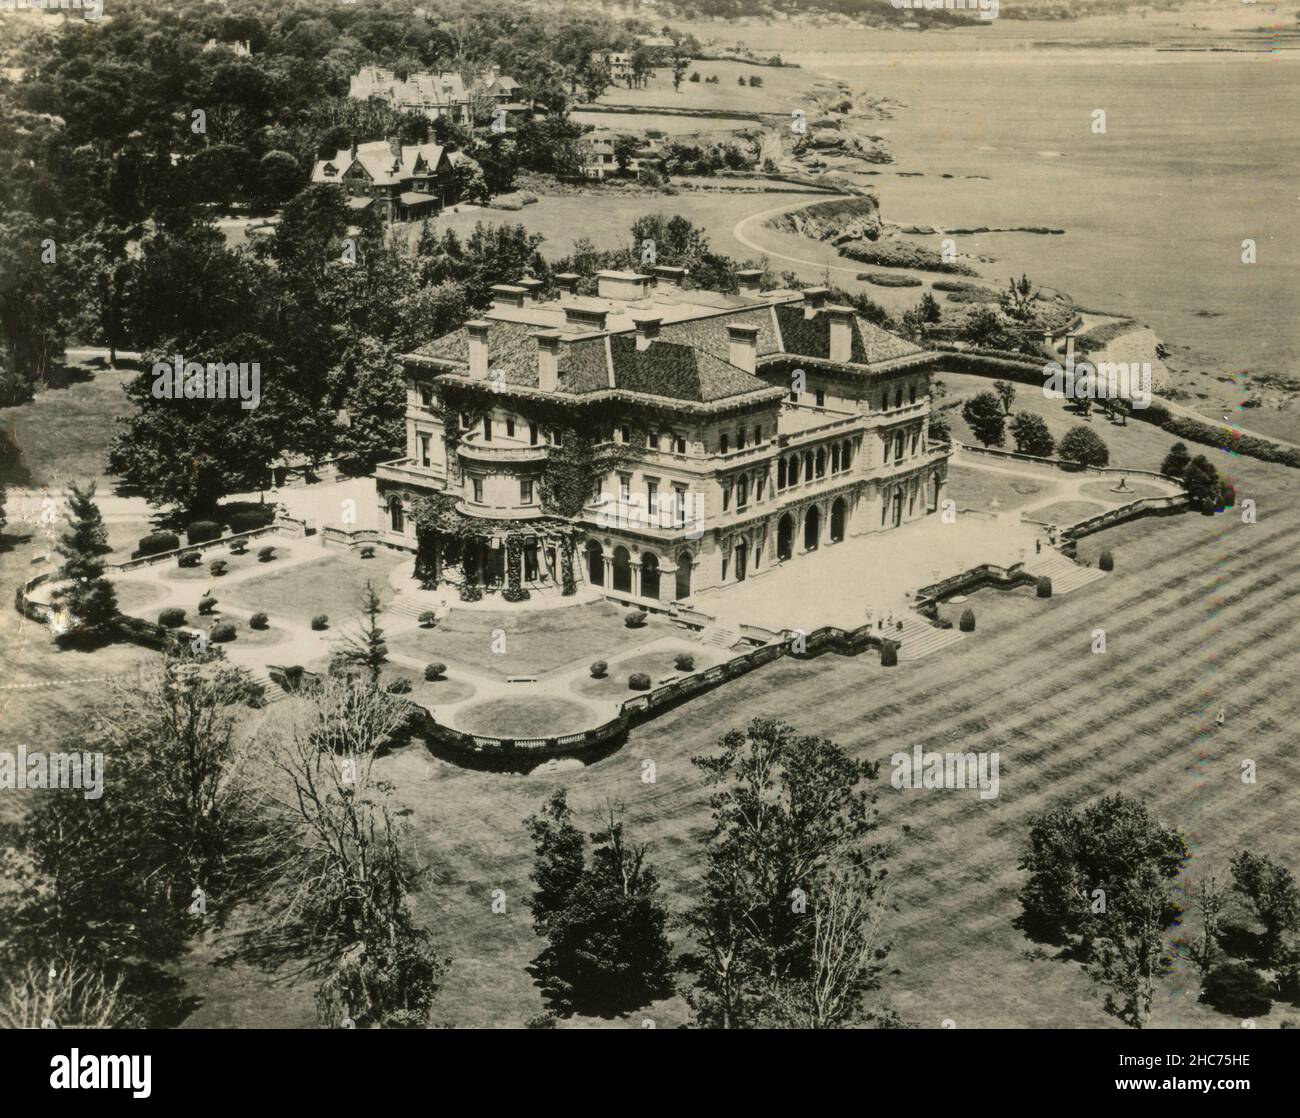 Vista aérea de la mansión Breakers, construida por Cornelius Vanderbilt, Newport, Rhode Island USA 1940s Foto de stock